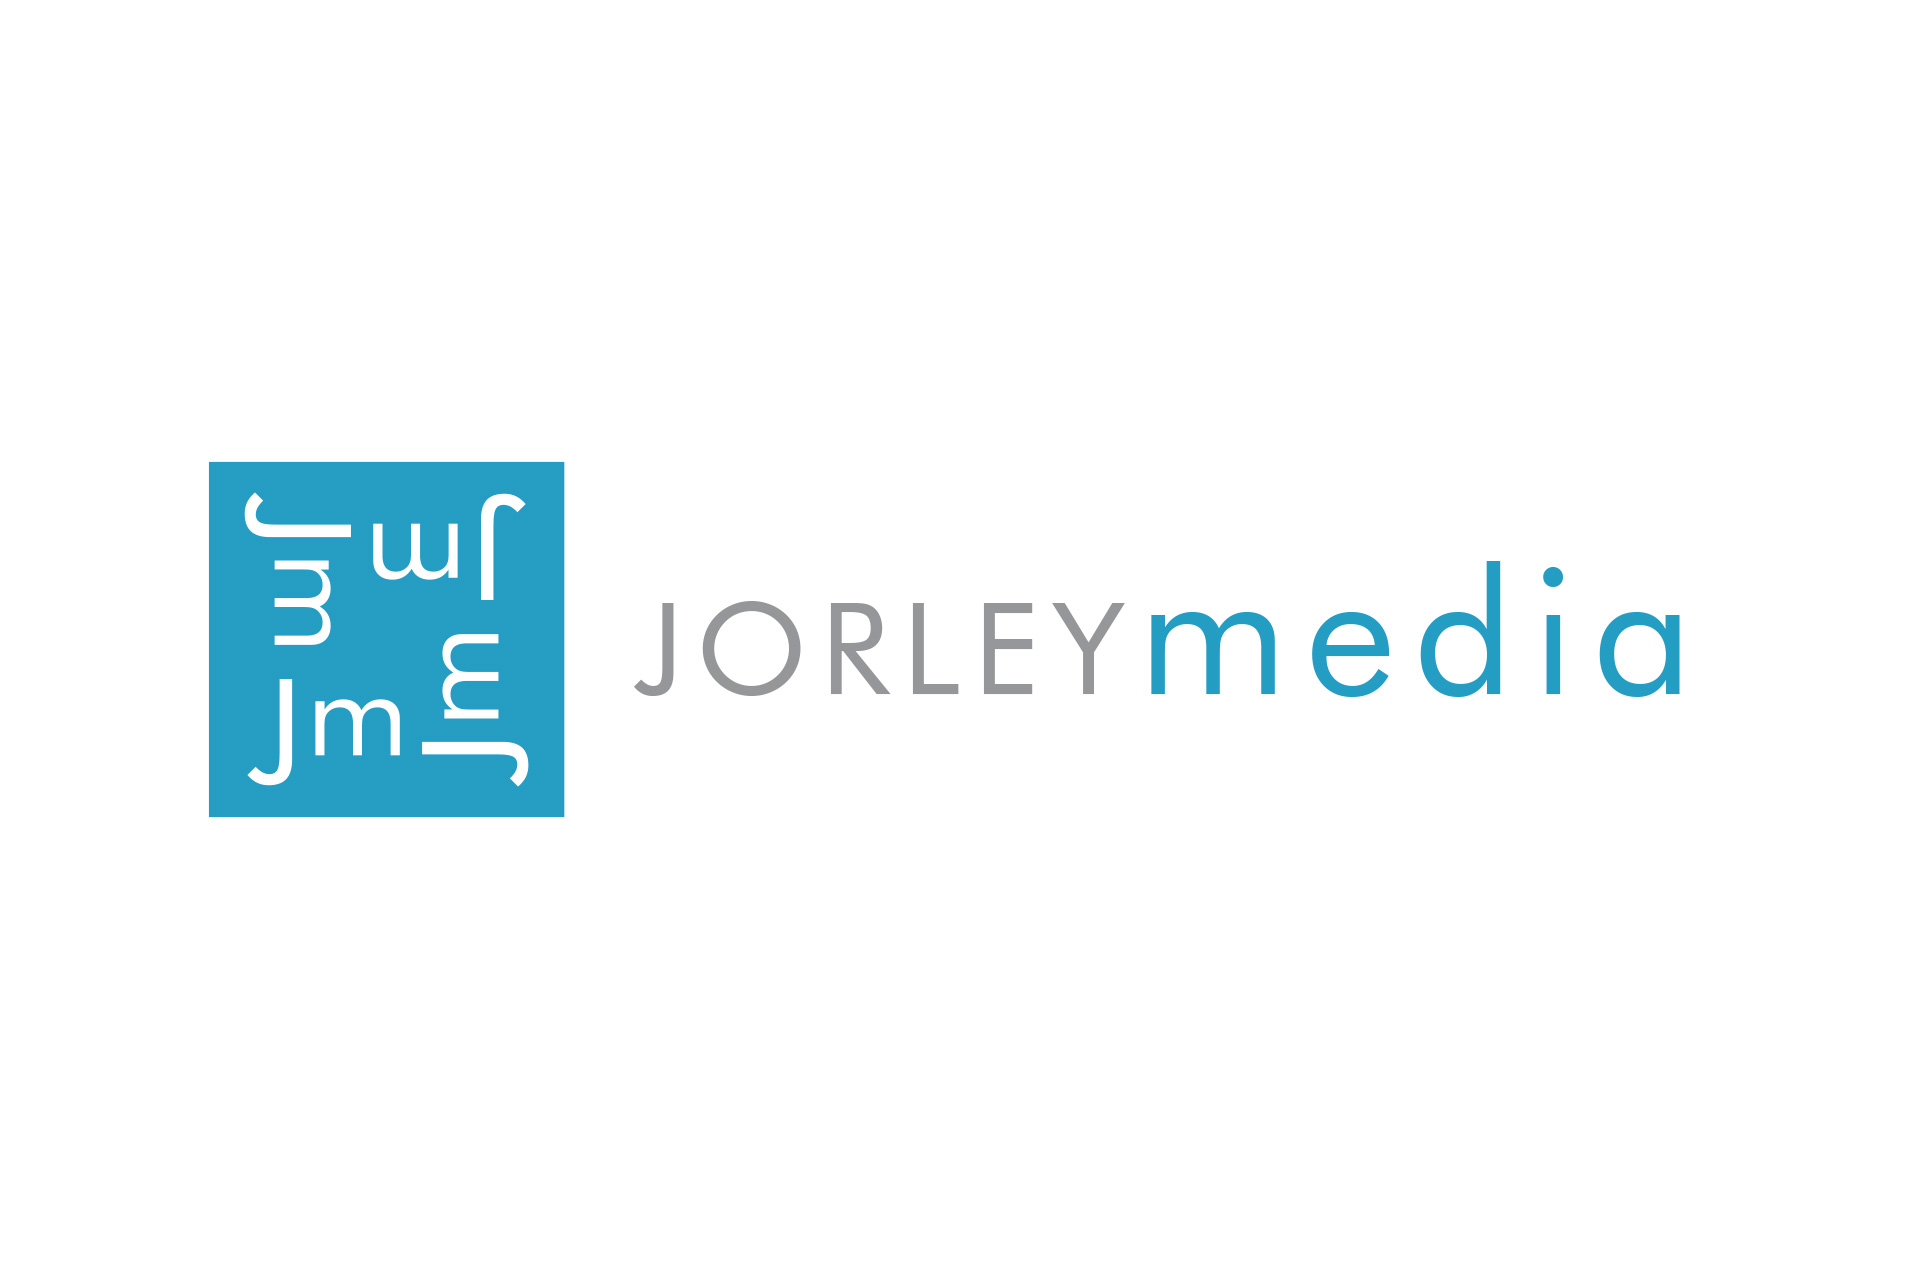 JORLEY Media